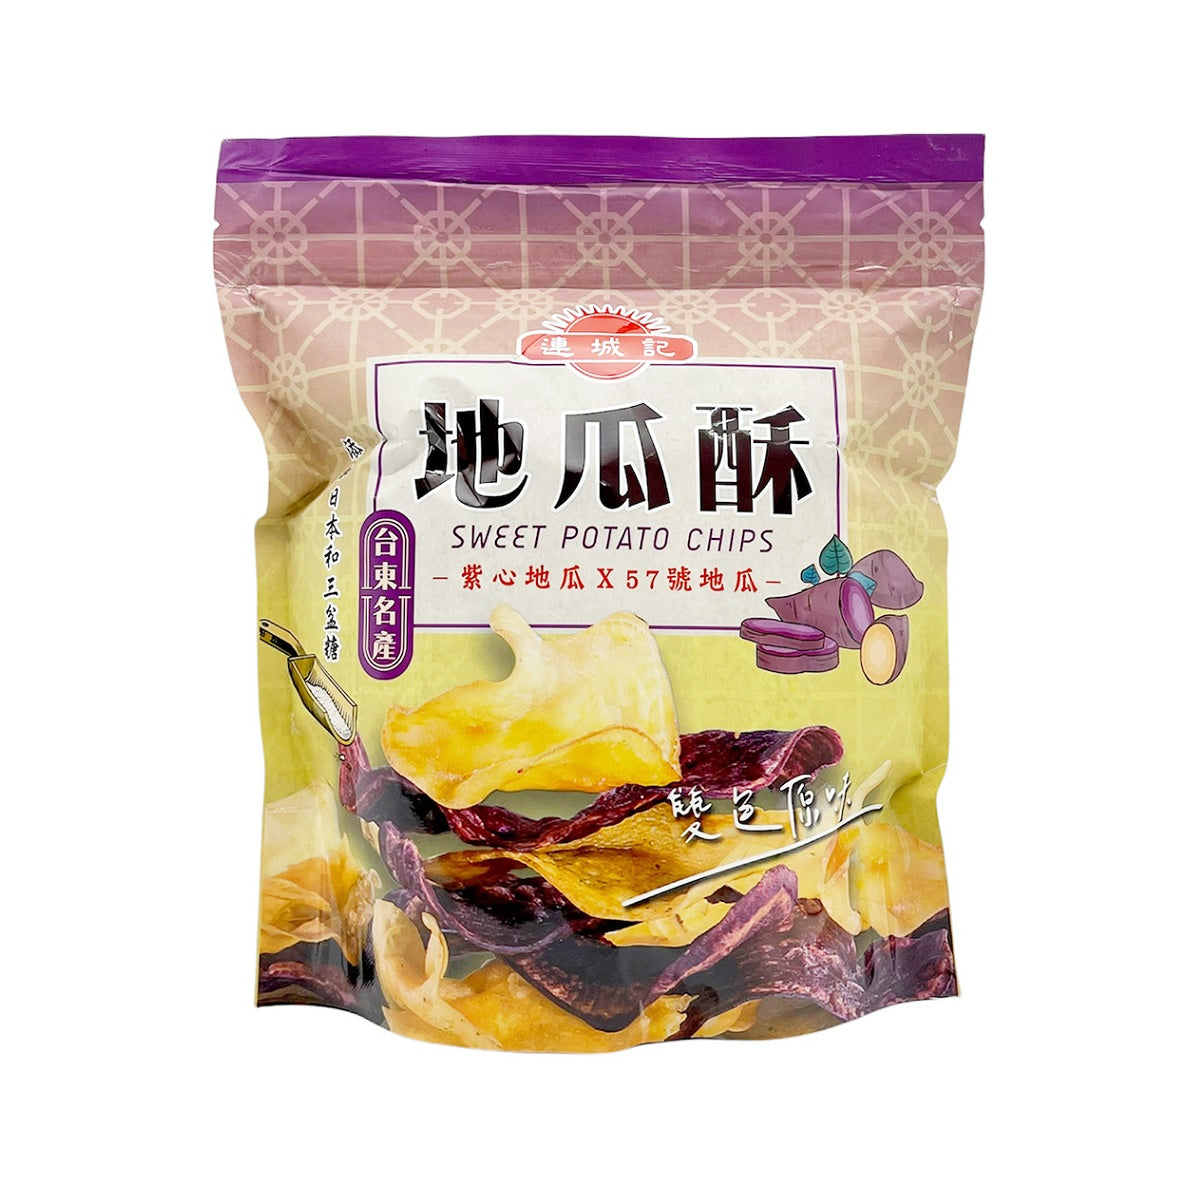 【LIANCHENG】 Yam & Sweet Potato Chips 140g